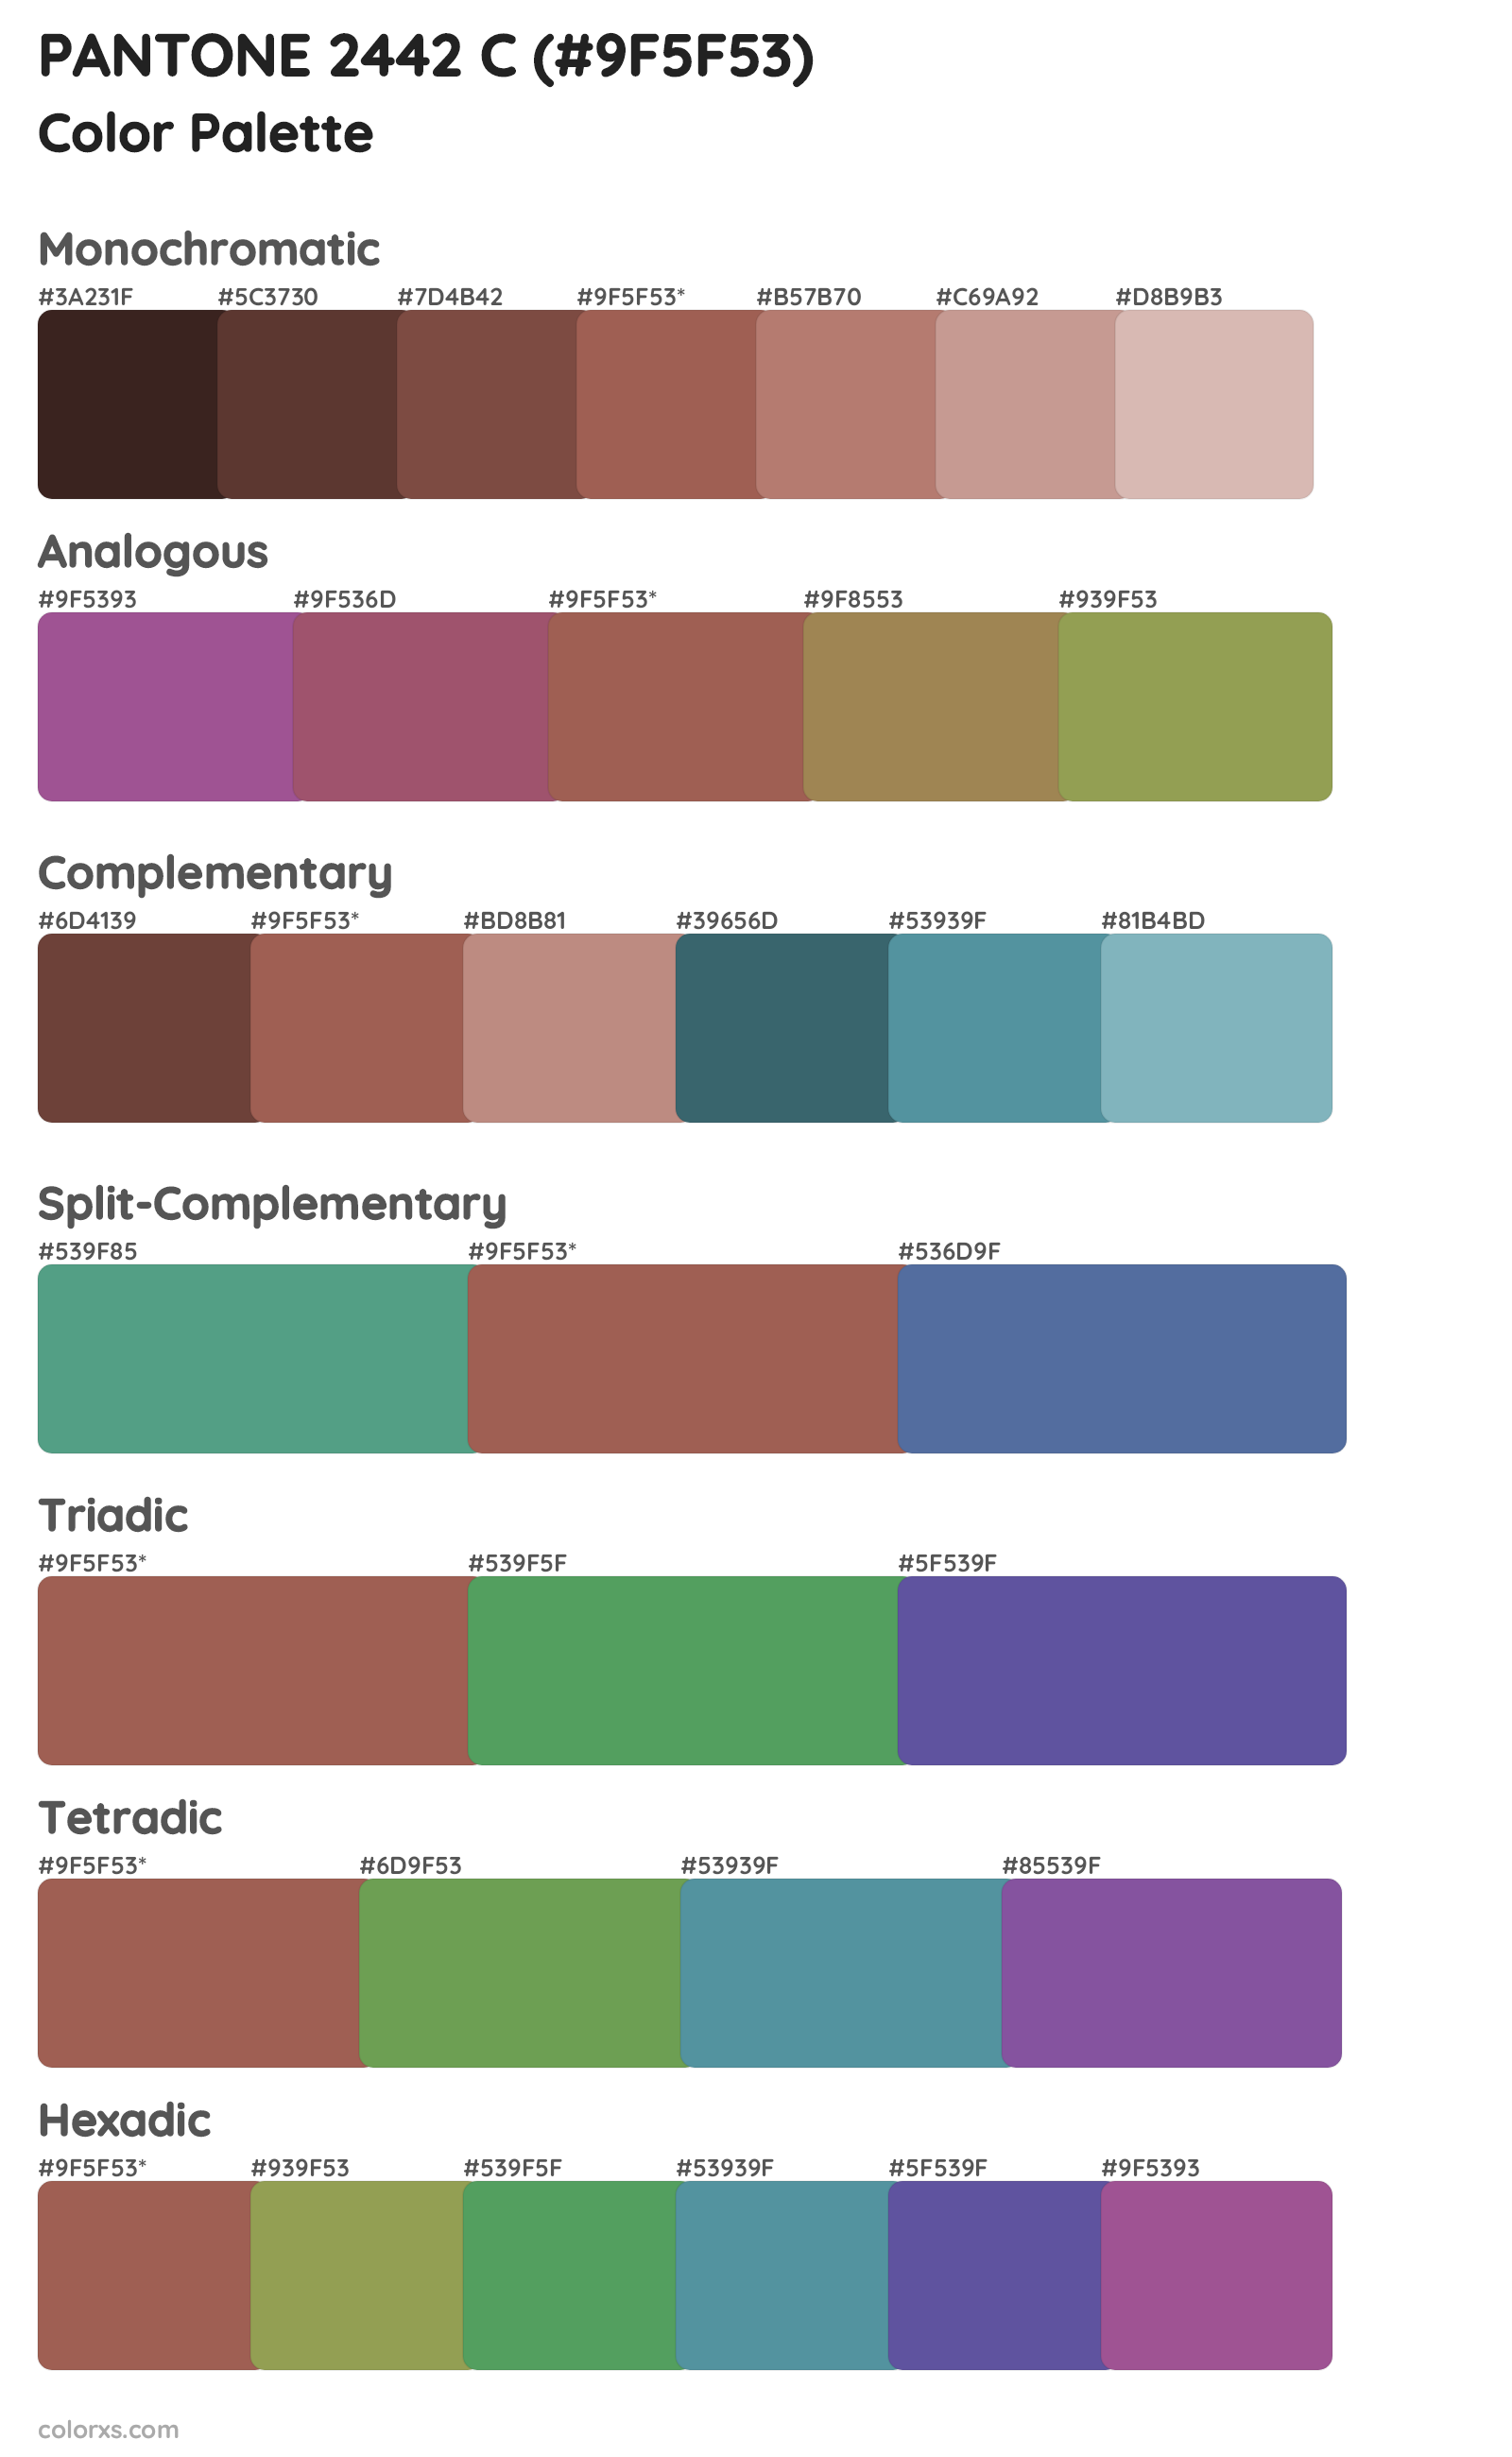 PANTONE 2442 C Color Scheme Palettes